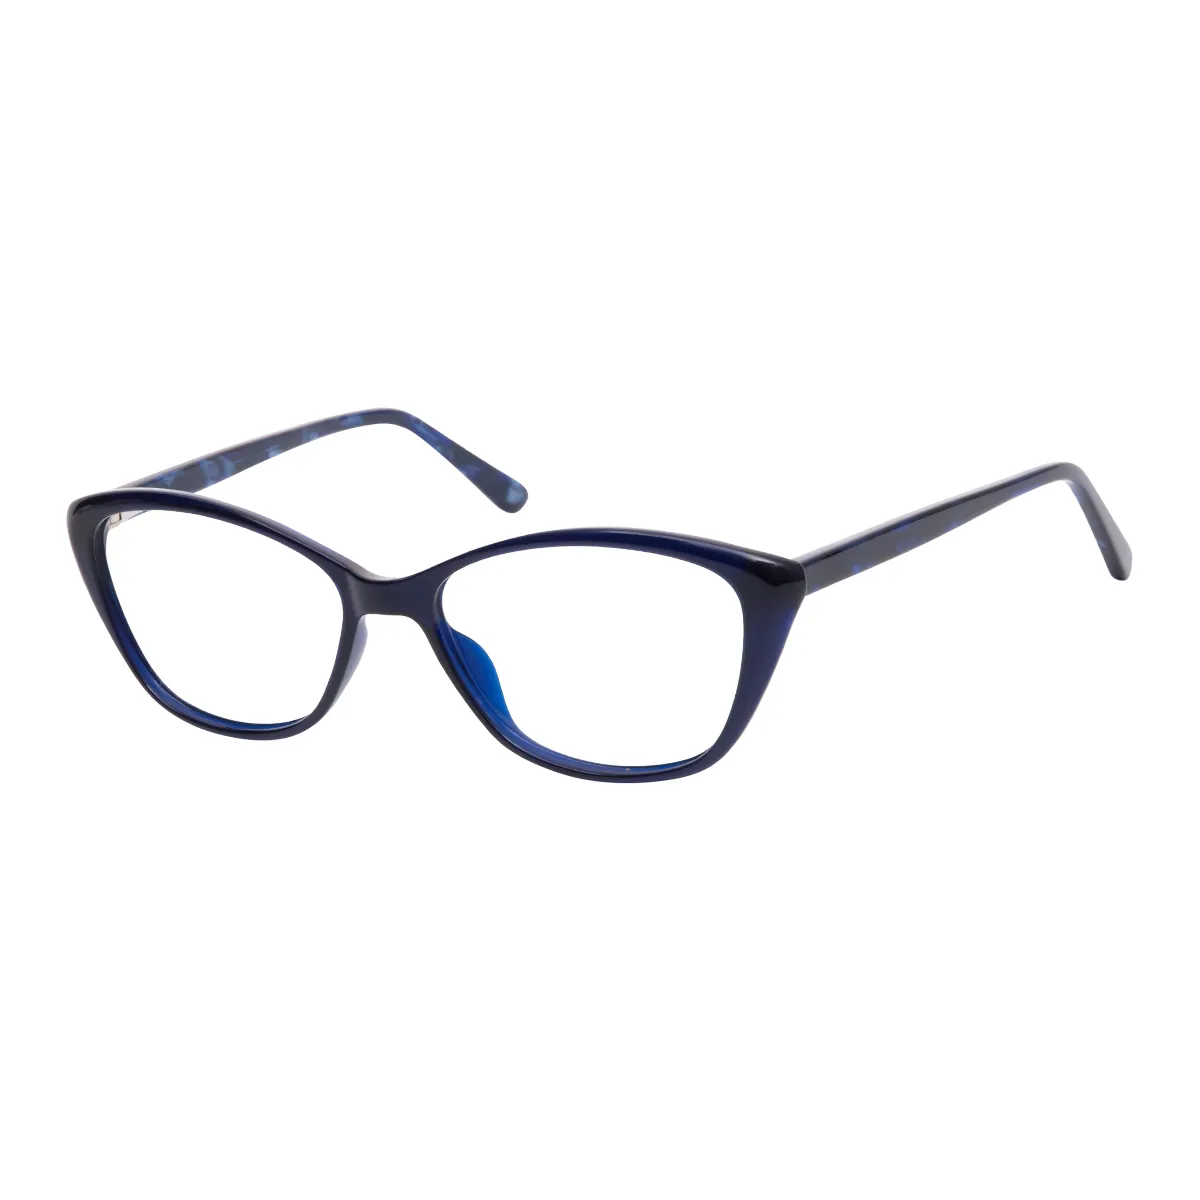 Pedro - Oval Blue Glasses for Women